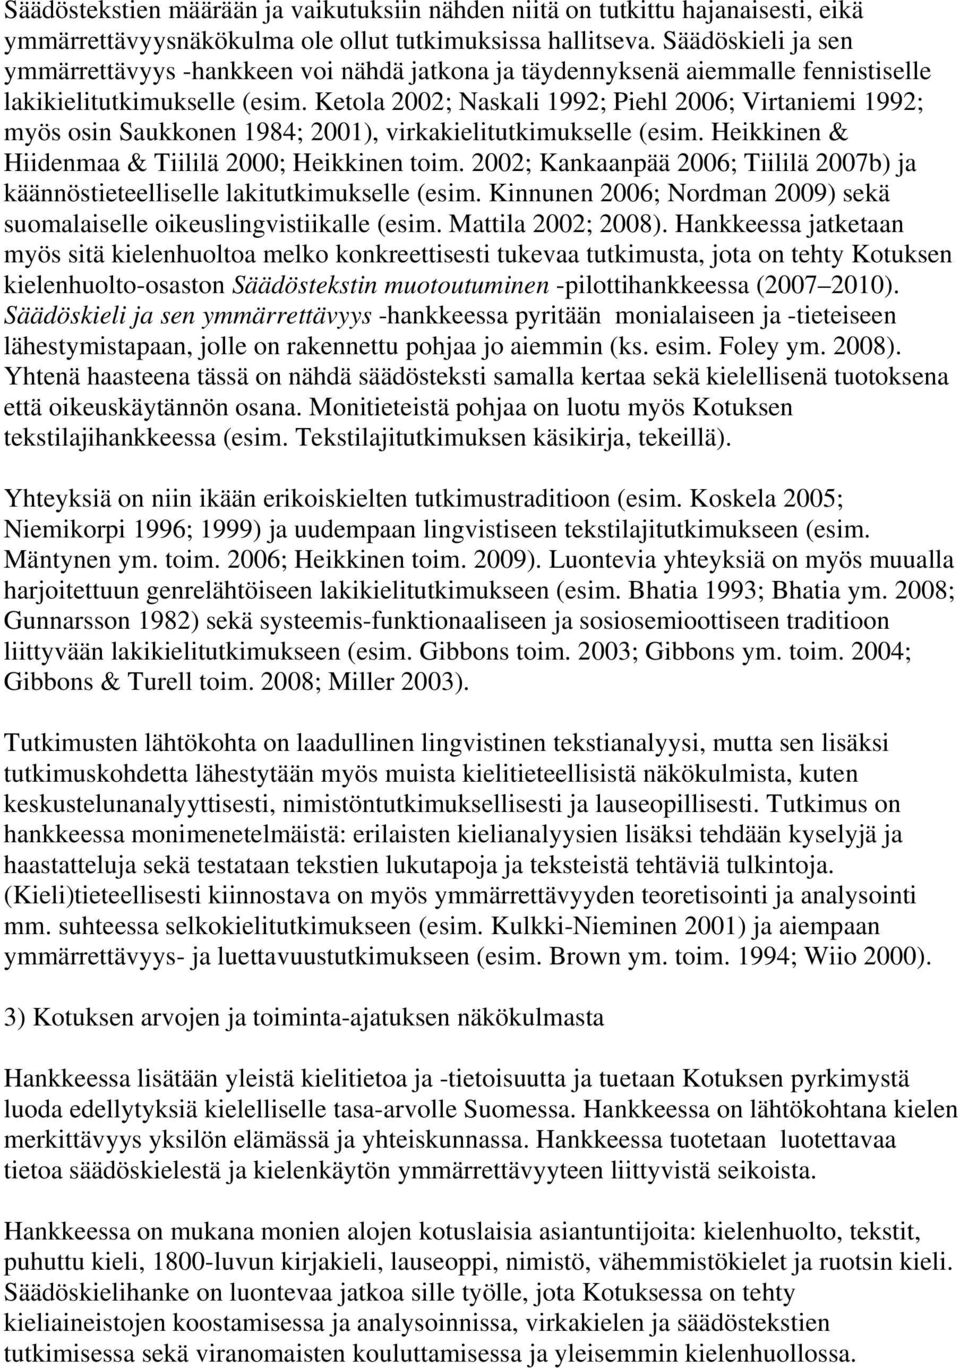 Ketola 2002; Naskali 1992; Piehl 2006; Virtaniemi 1992; myös osin Saukkonen 1984; 2001), virkakielitutkimukselle (esim. Heikkinen & Hiidenmaa & Tiililä 2000; Heikkinen toim.